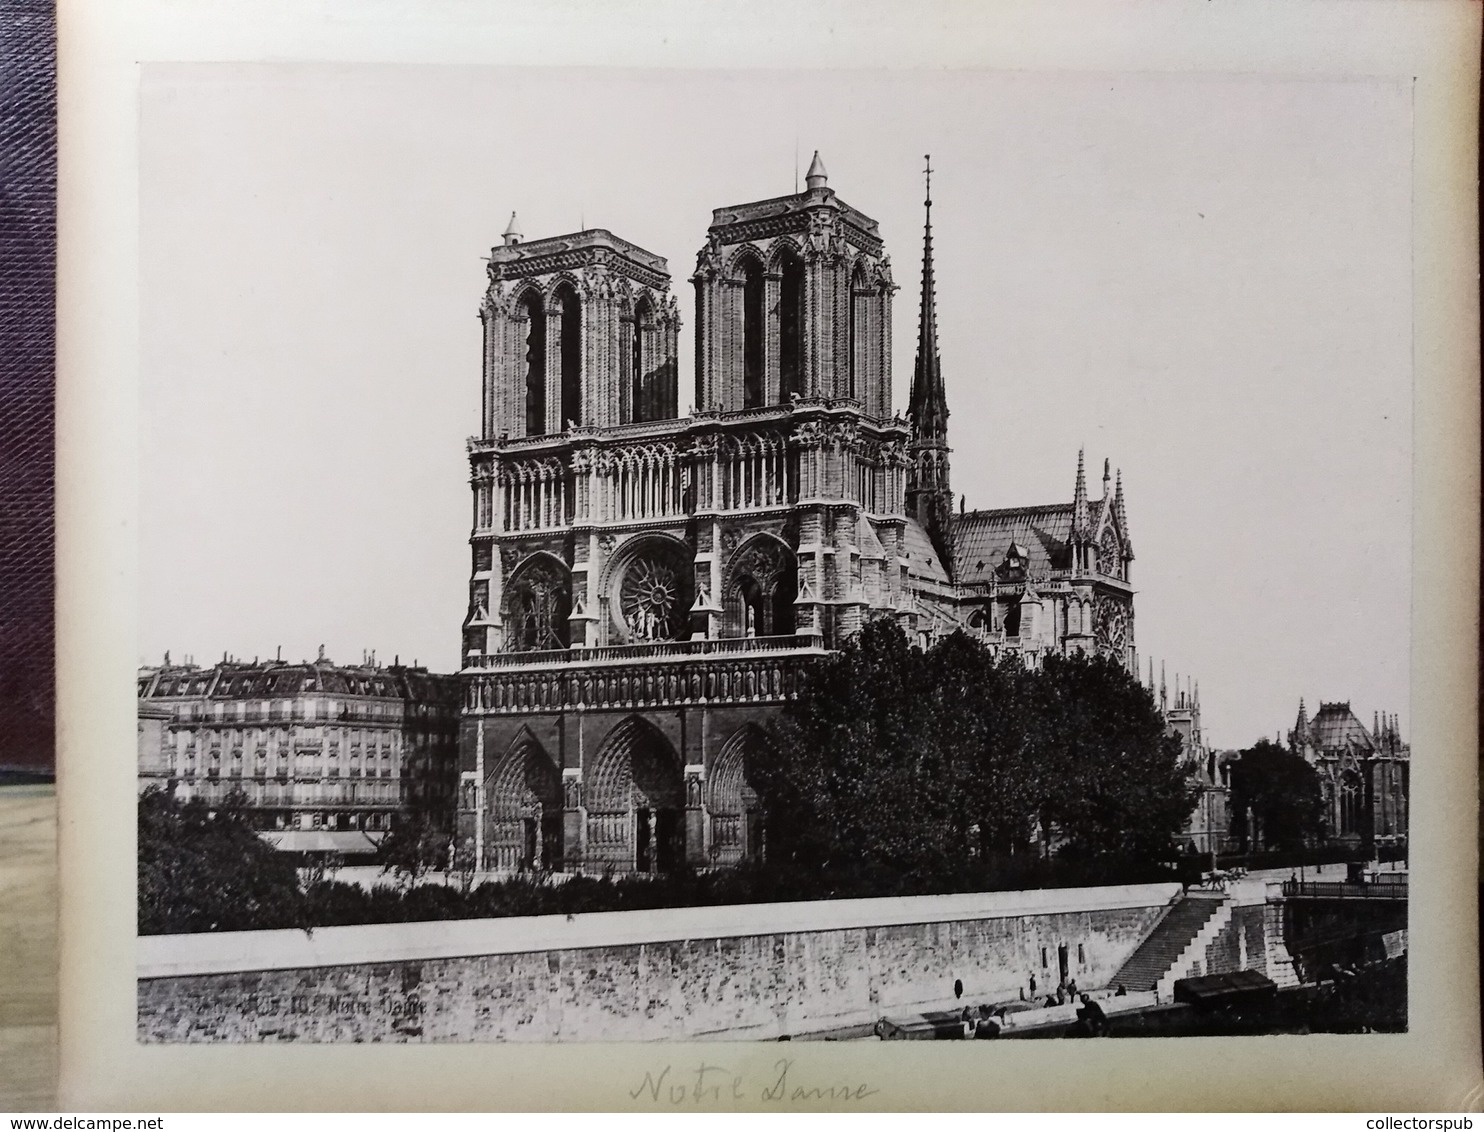 PÁRIZS Századfordulós nagy alakú fotóalbum 47 képpel  27*23 cm-es fotók, sok kép látható, de nem teljes  /  PARIS turn-o